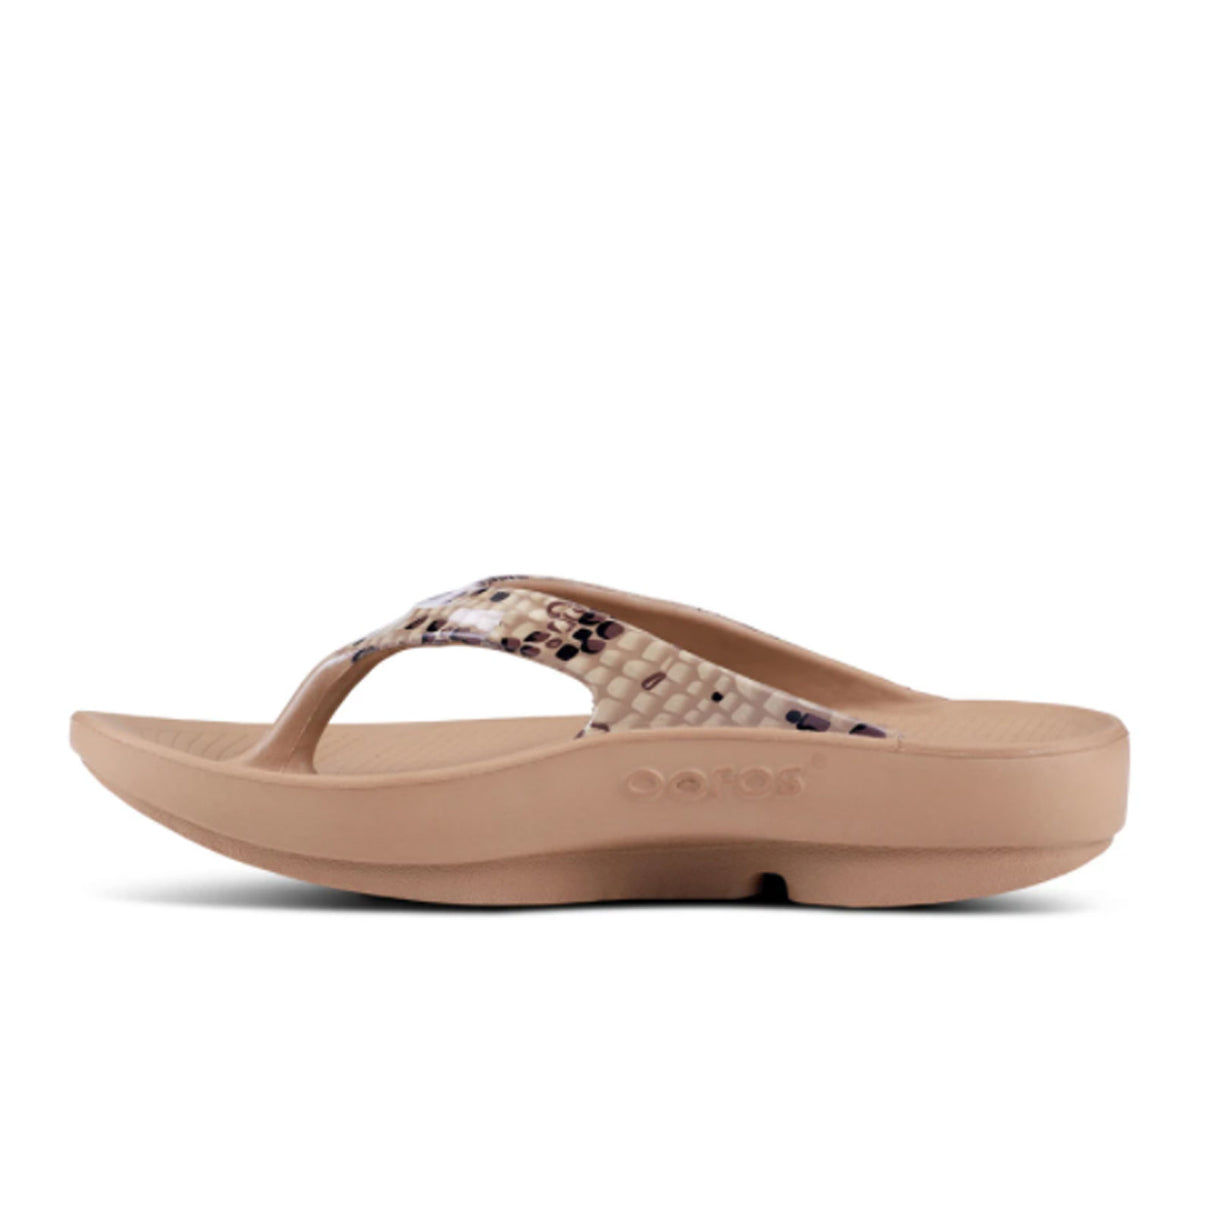 Oofos OOlala Limited Sandal (Women) - Desert Snake Sandals - Slide - The Heel Shoe Fitters